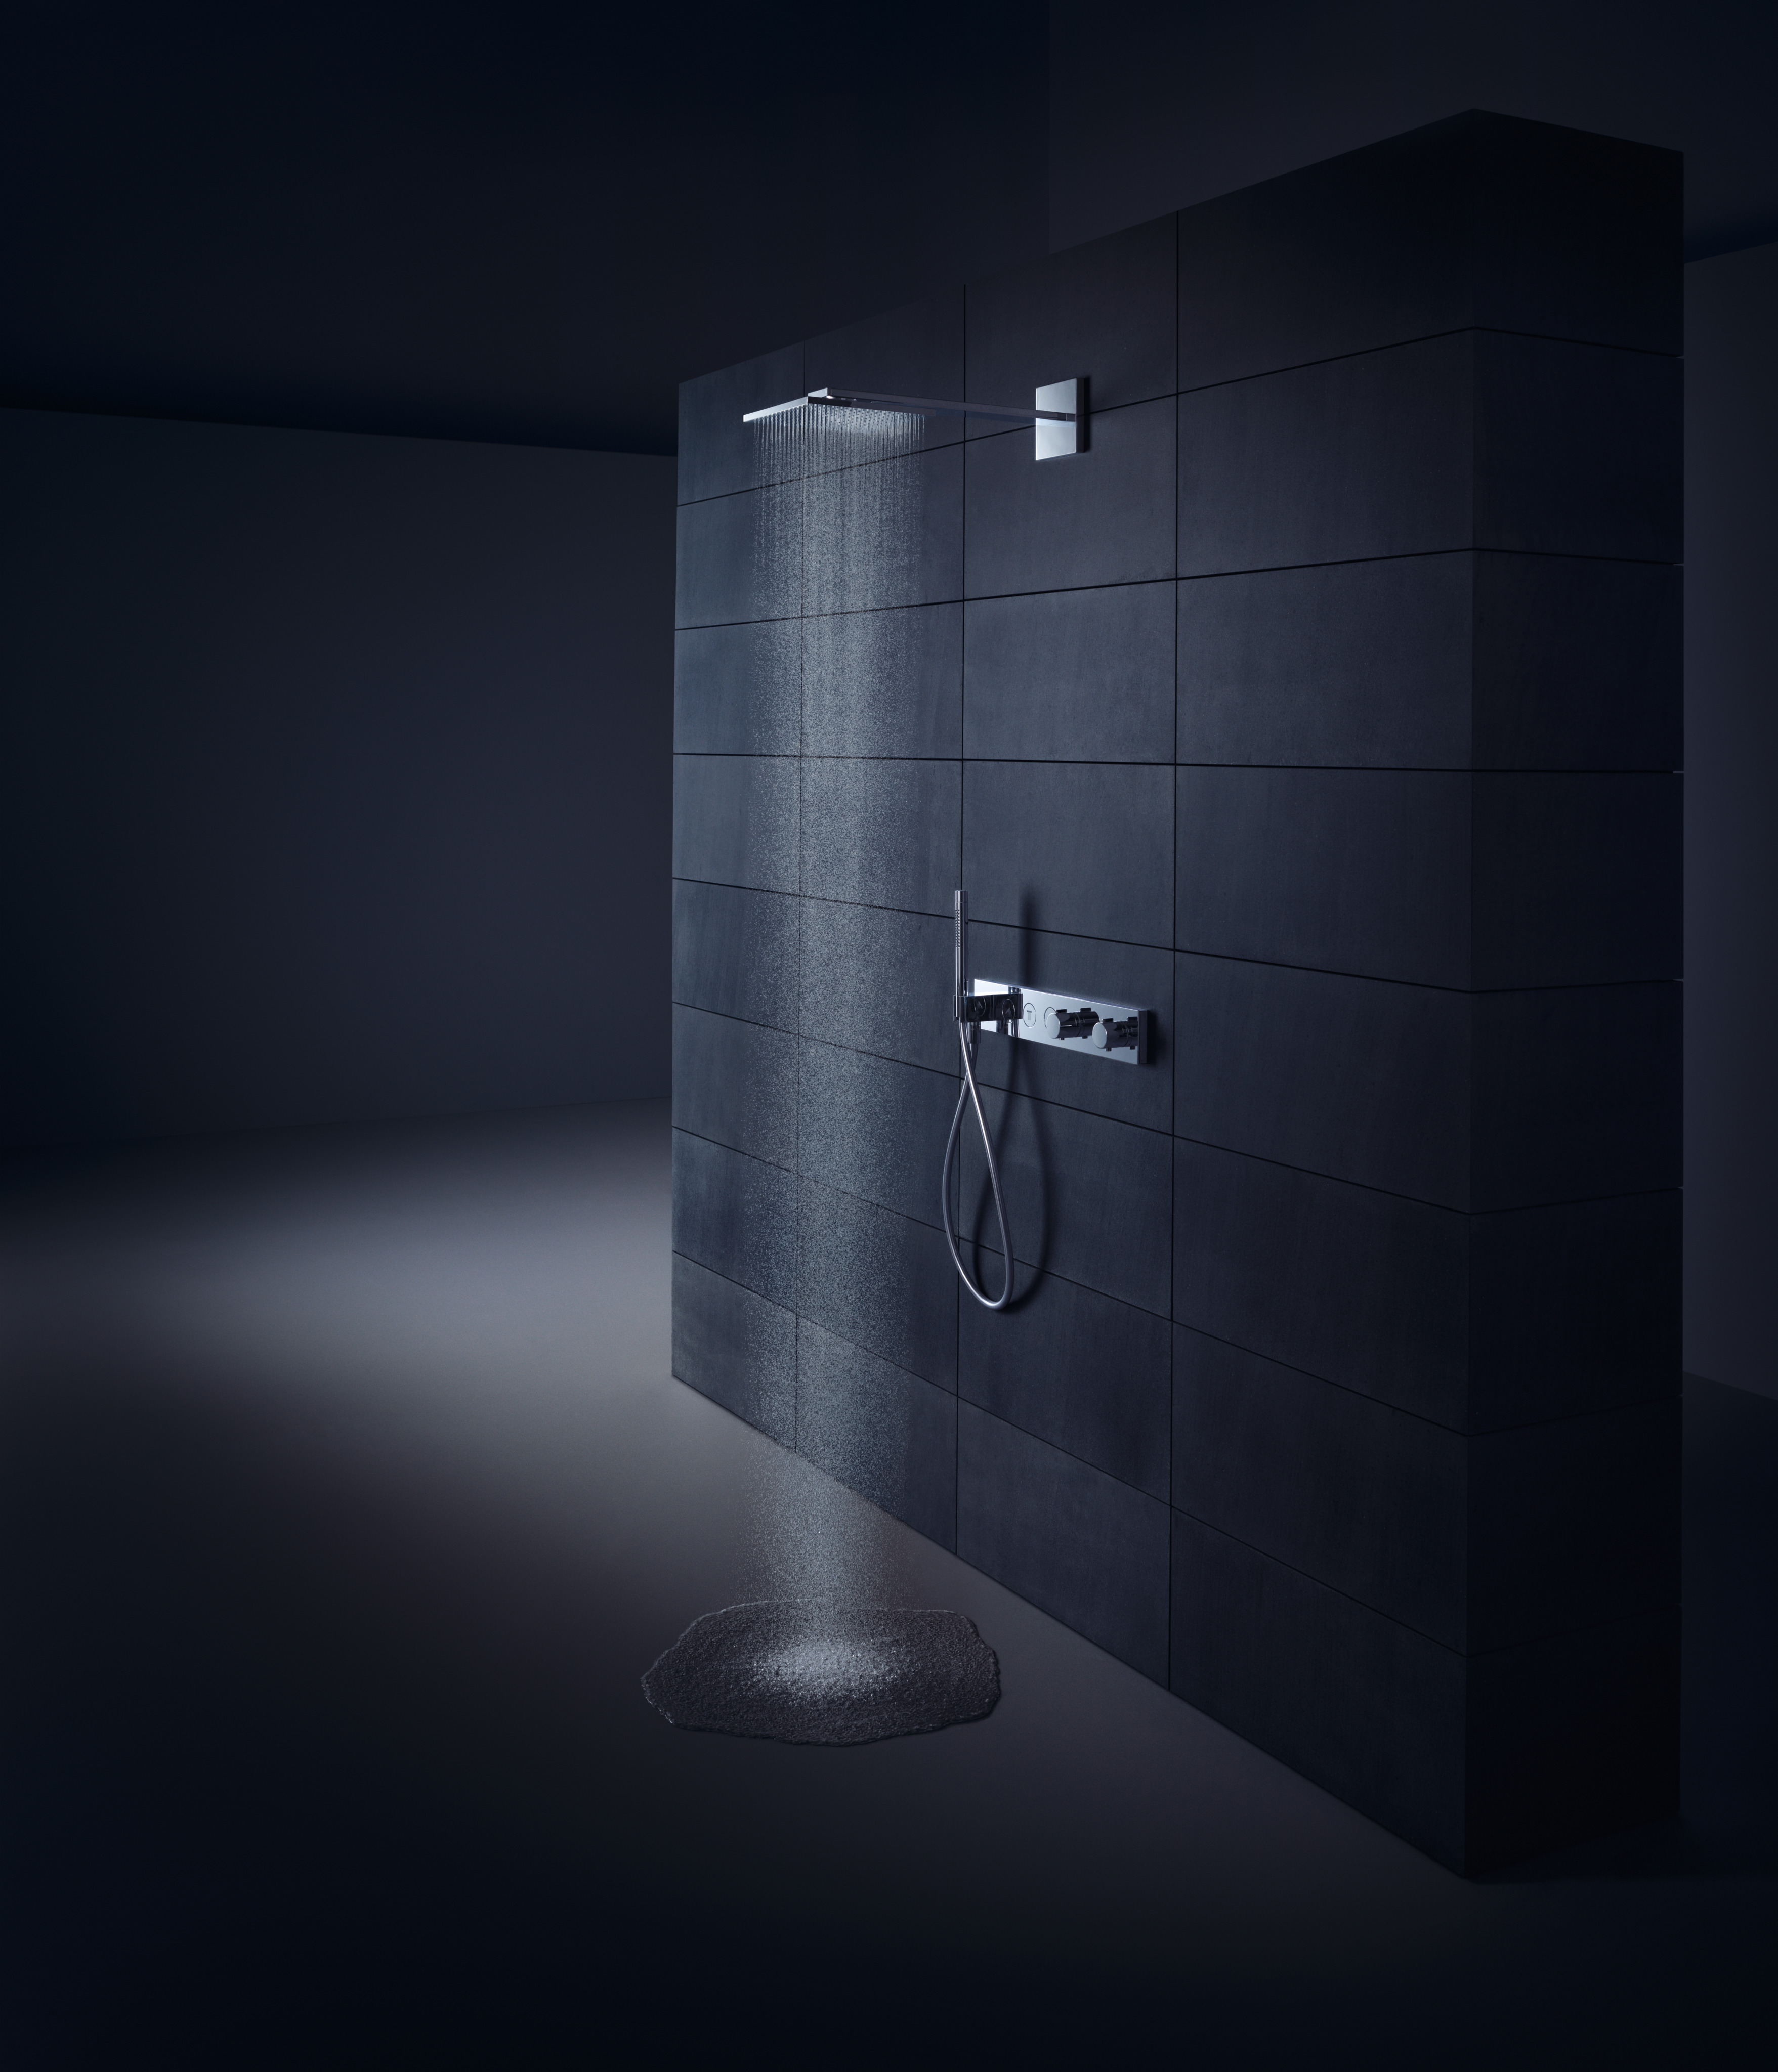 アクサーシャワー シャワー混合水栓: 3機能, クロム, 品番 18356000